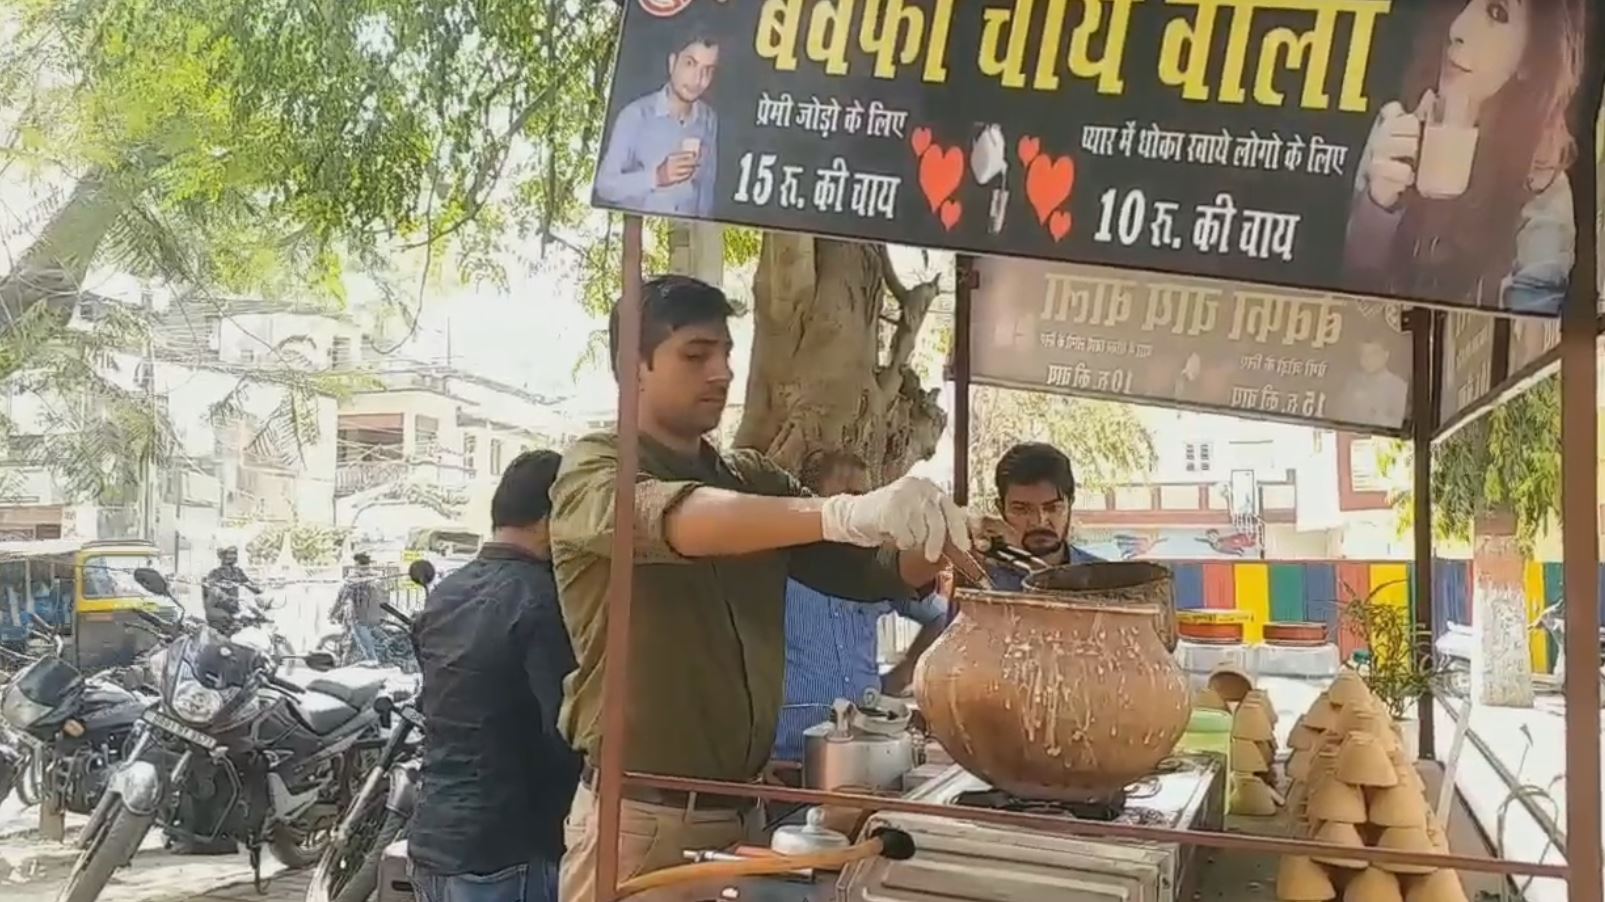 प्यार में धोखा मिलने के बाद अब संदीप बेचते हैं चाय